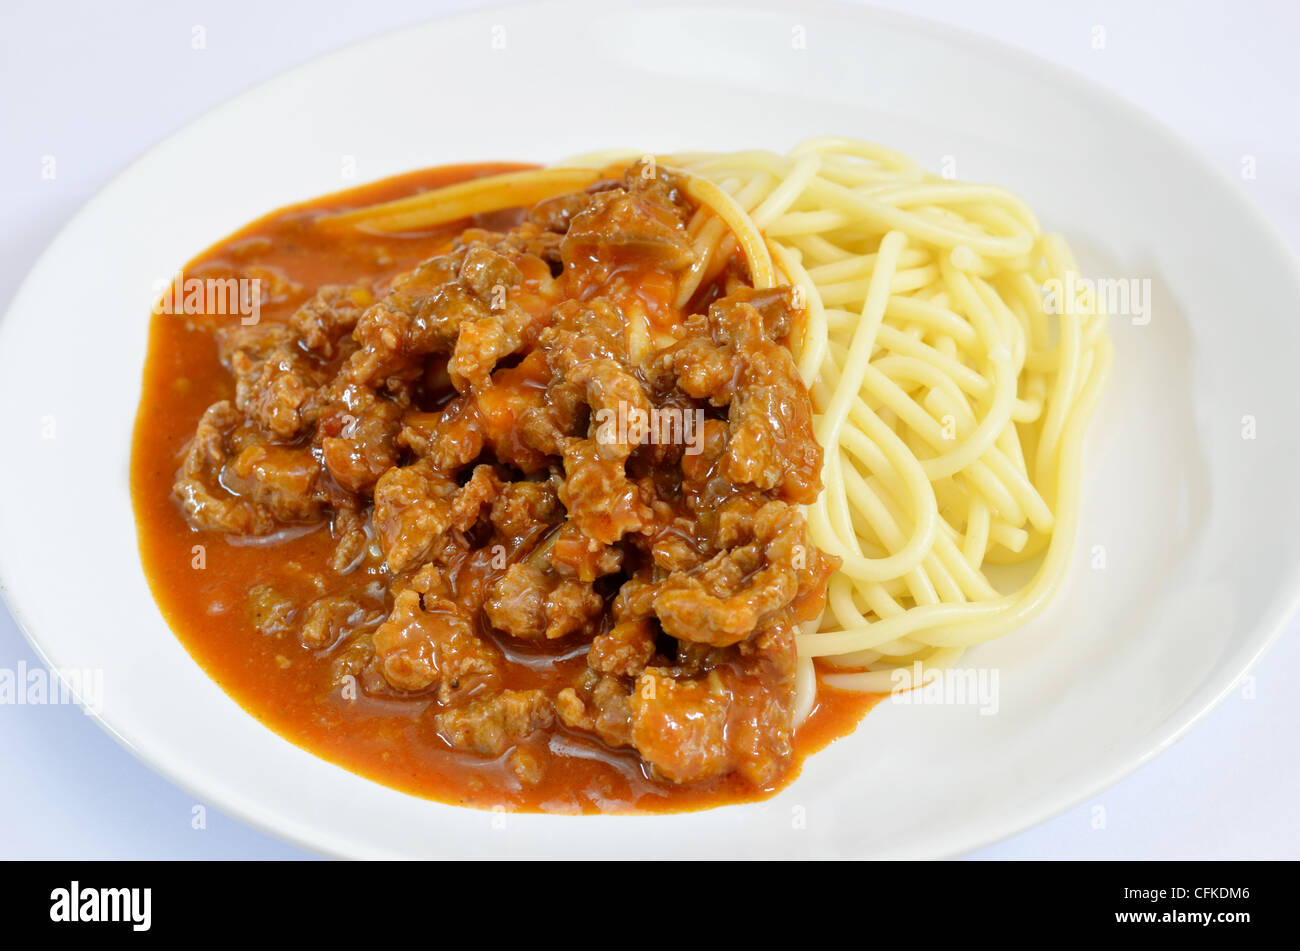 Spaghettis à la bolognaise est une cuisine populaire , spaghetti avec sauce tomate et viande bovine Banque D'Images